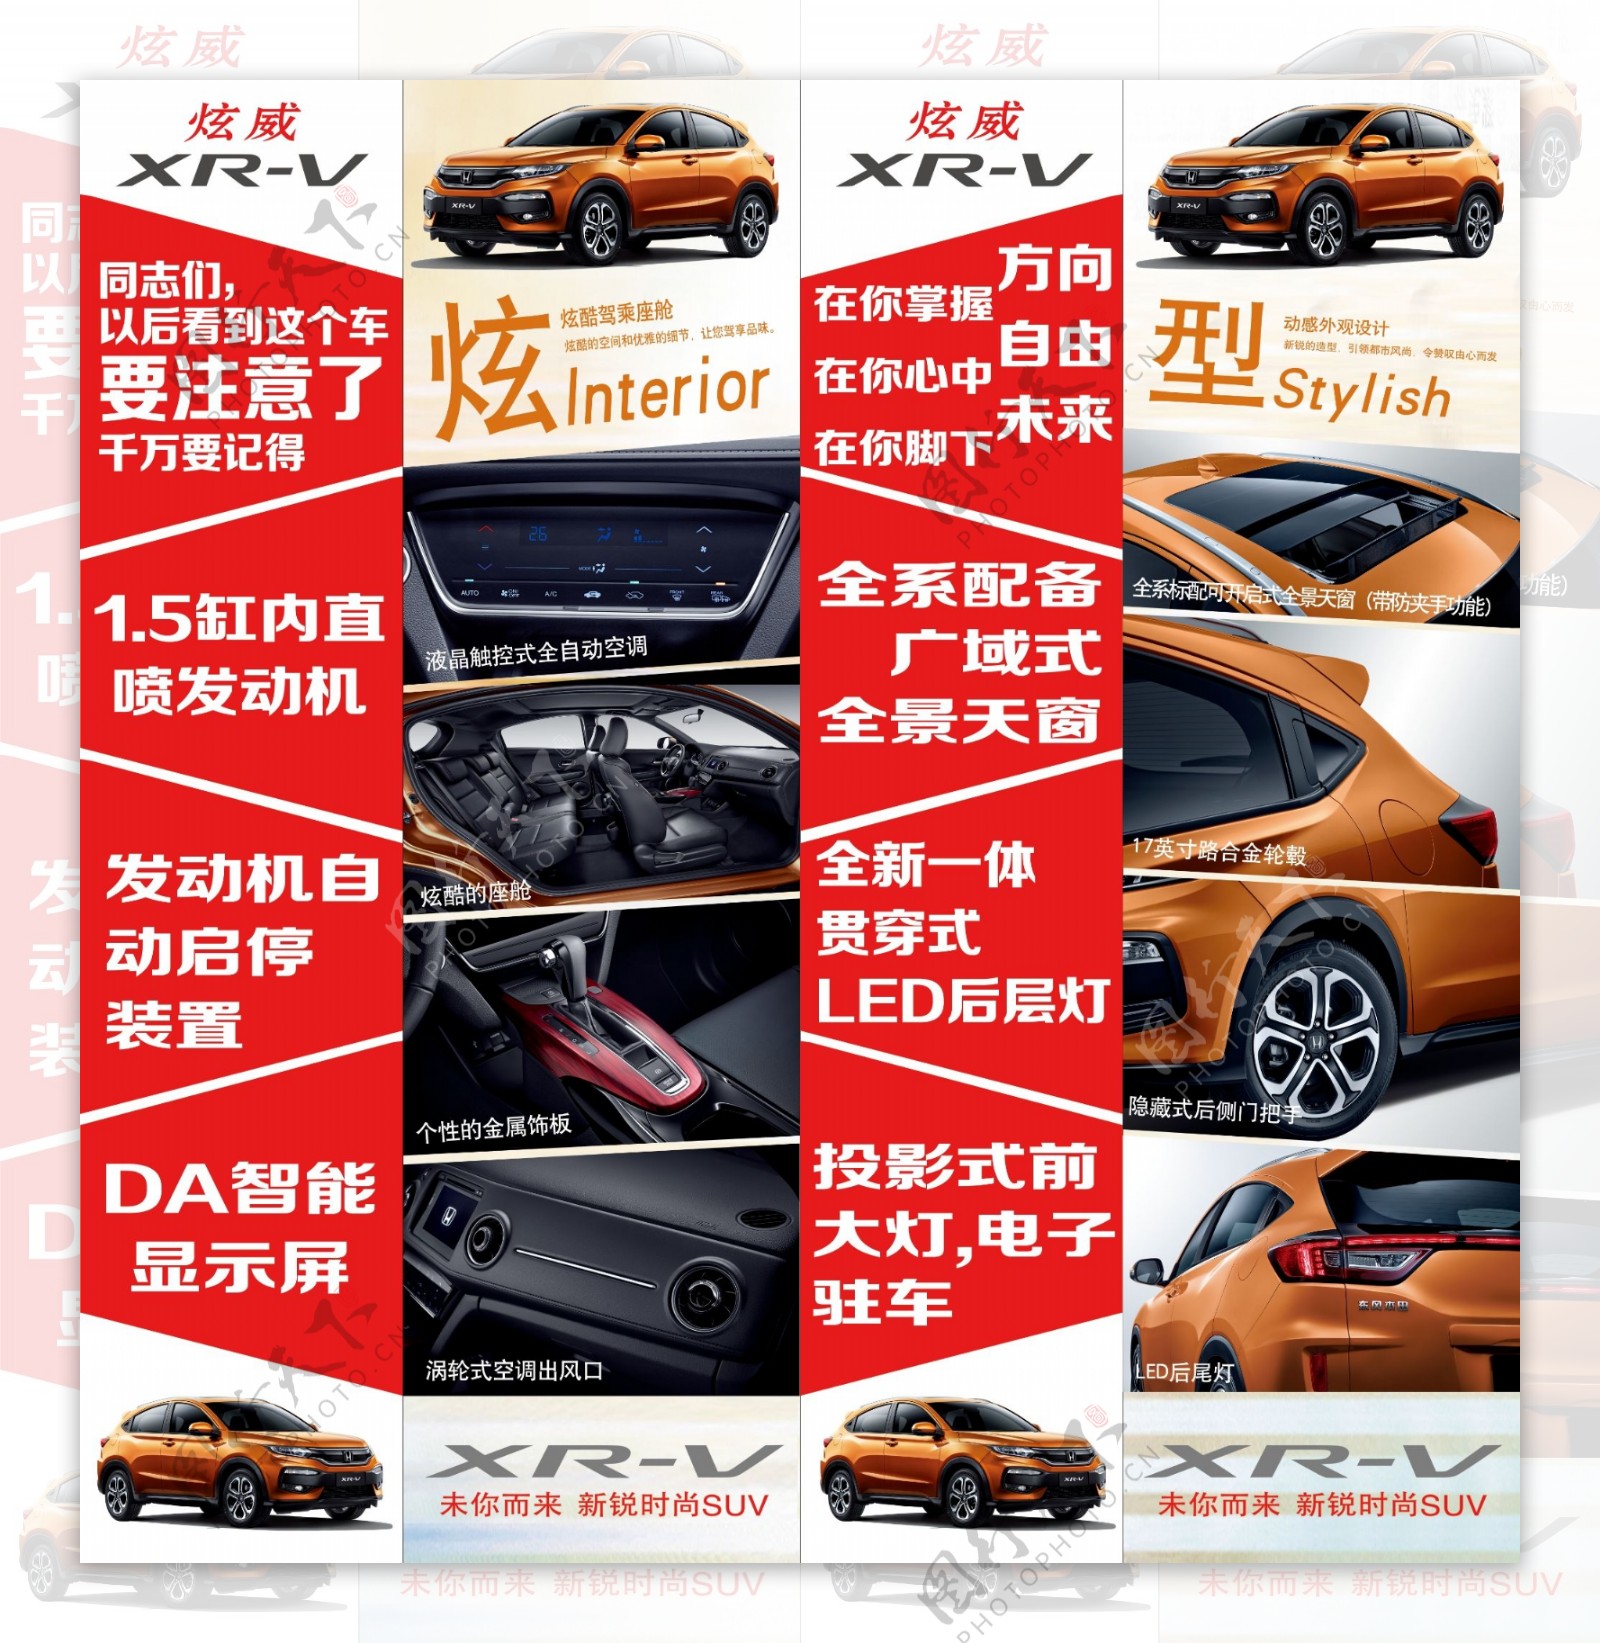 XRV卖点画面图片